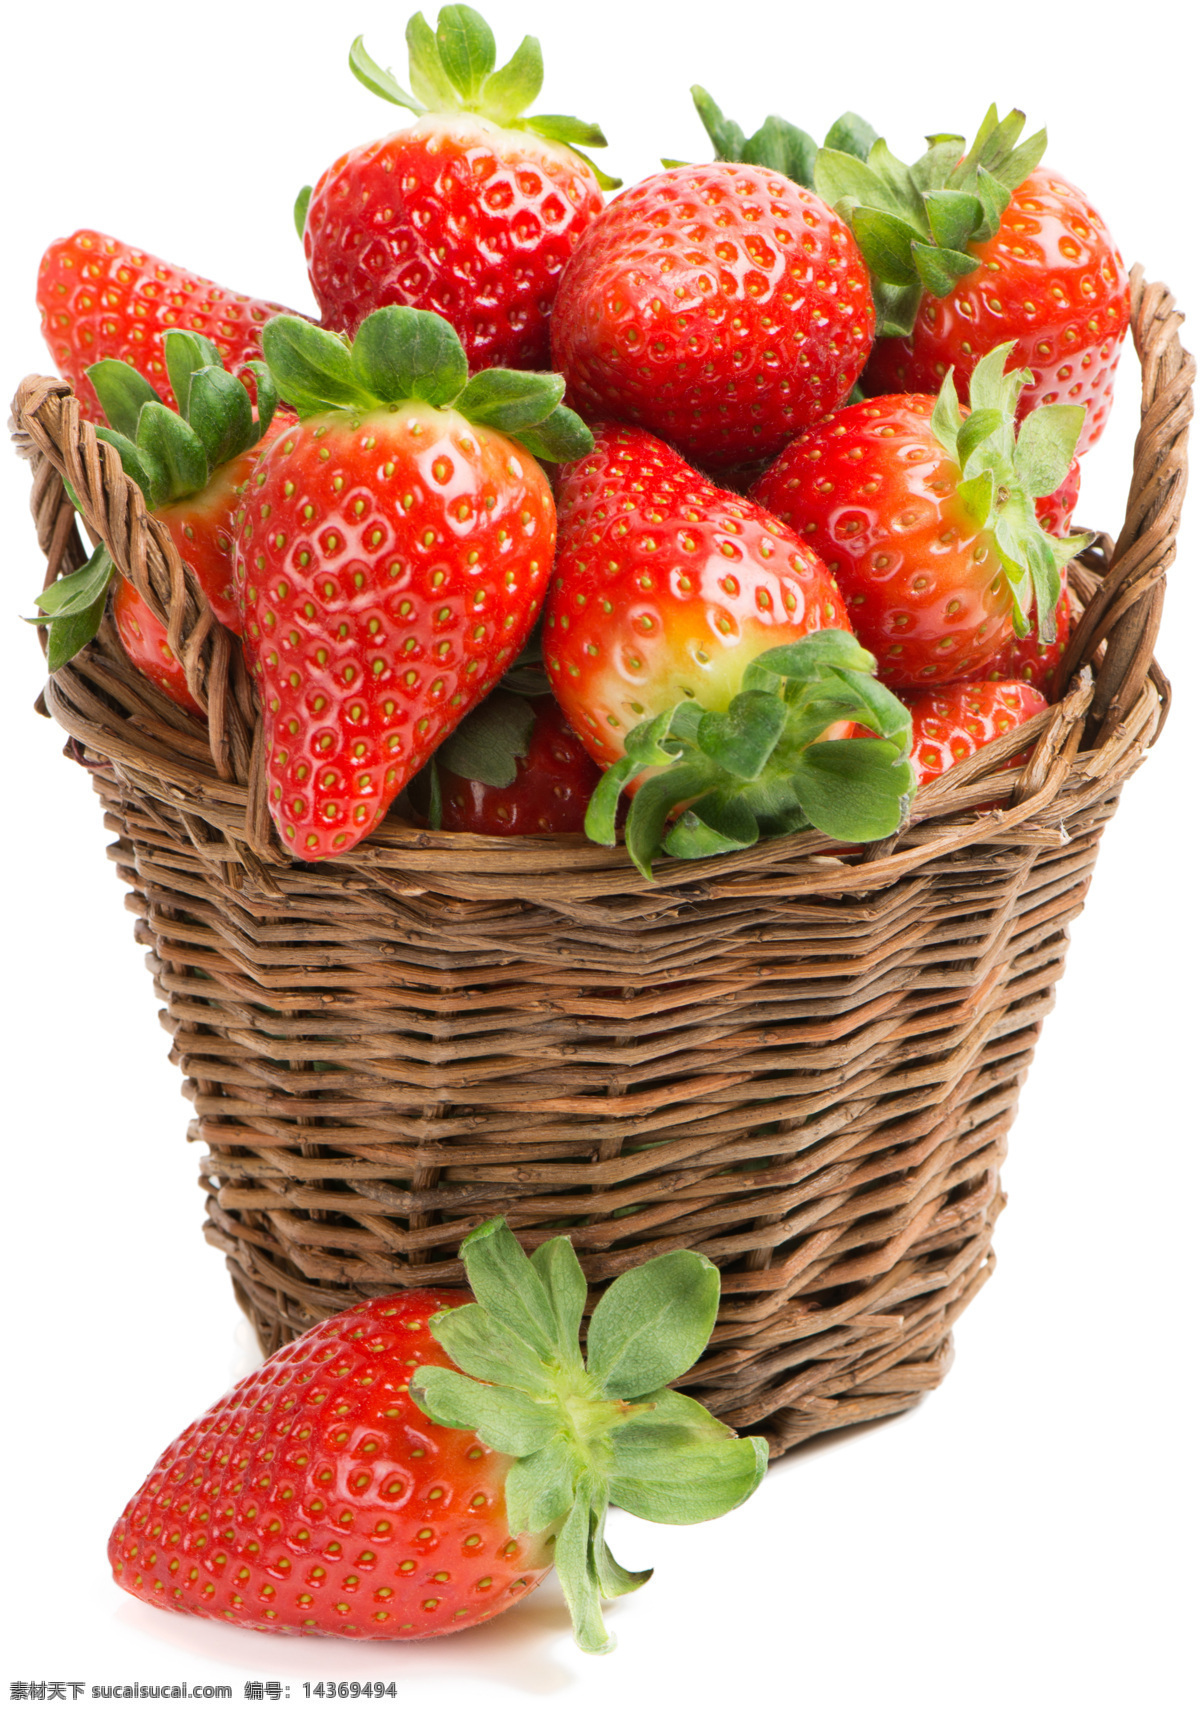 果酱 草莓酱 新鲜草莓 草莓栅 一篮草莓 牛奶草莓 大草莓 草莓摄影 草莓图片 美草莓 红草莓 新鲜水果 水果 生物世界